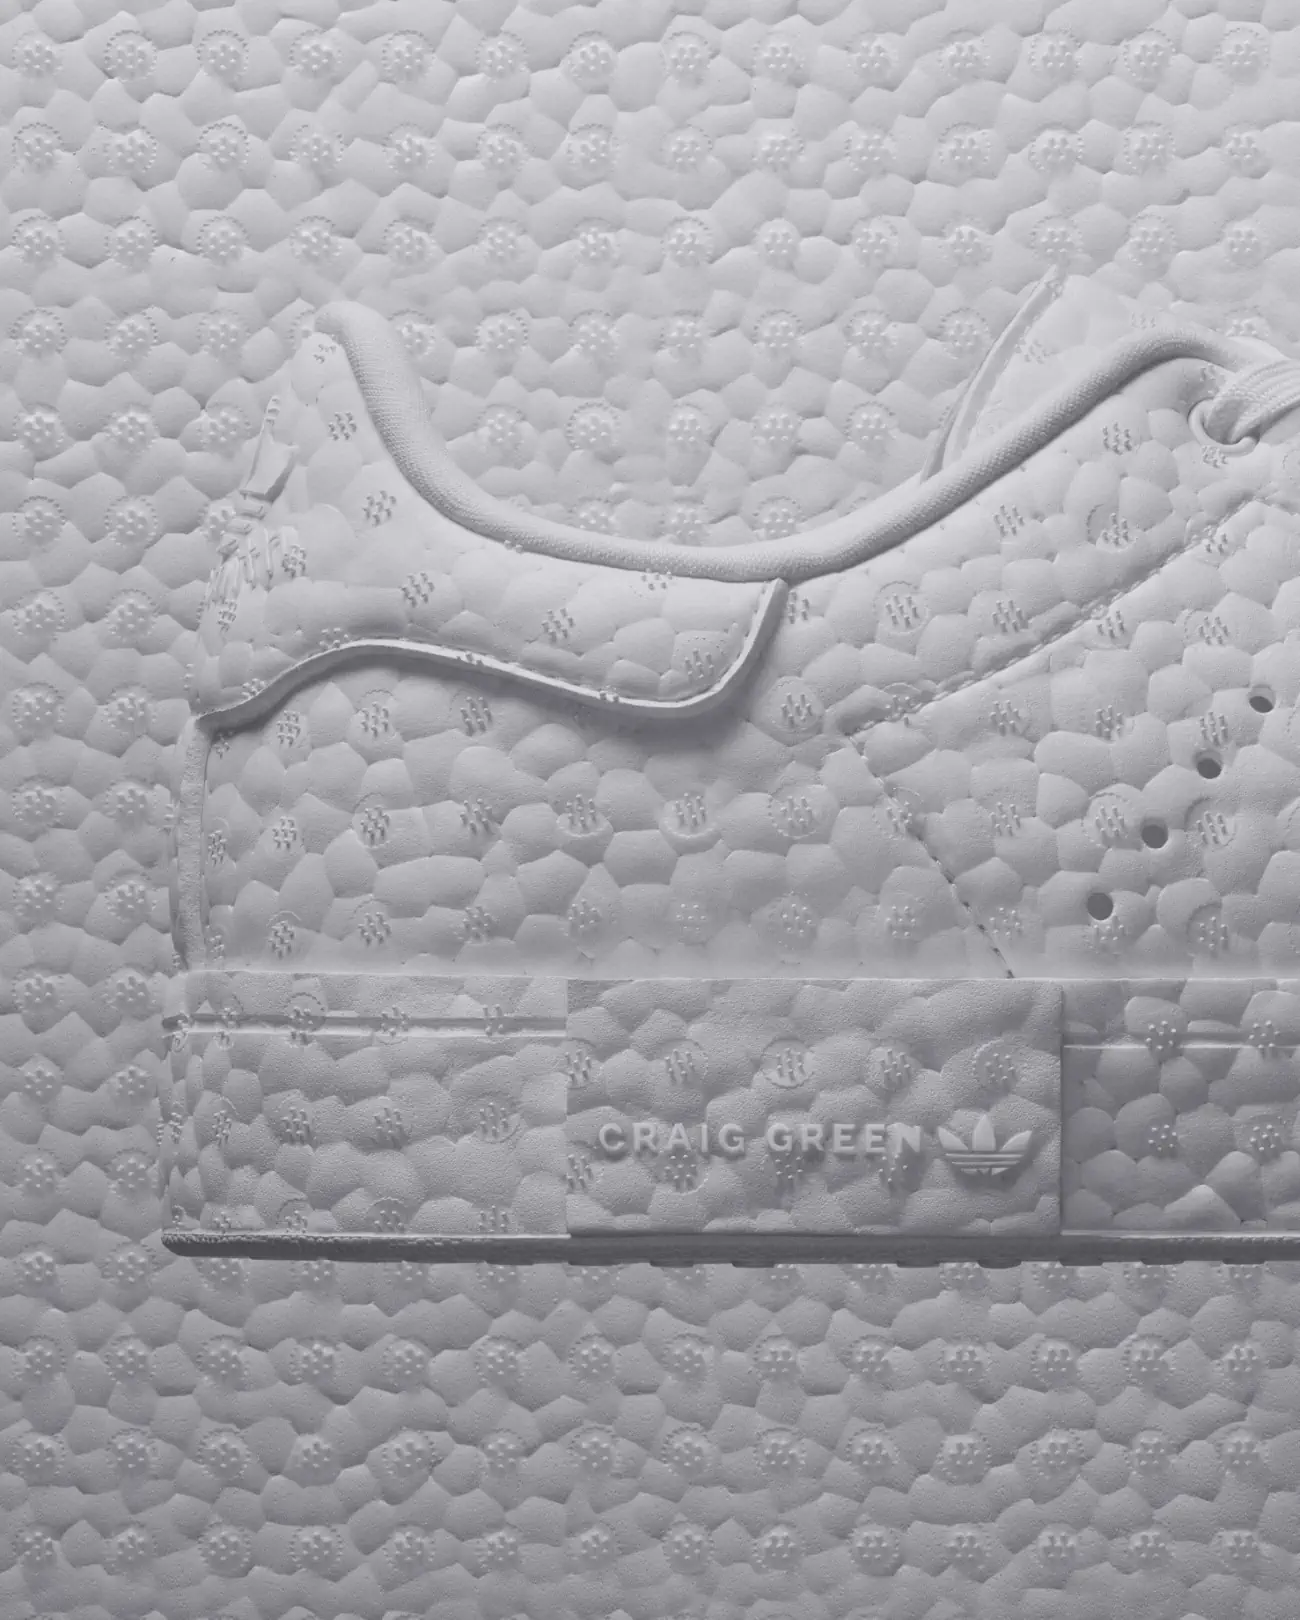 adidas Originals x Craig Green reimagine Stan Smith for Fall Winter 2023